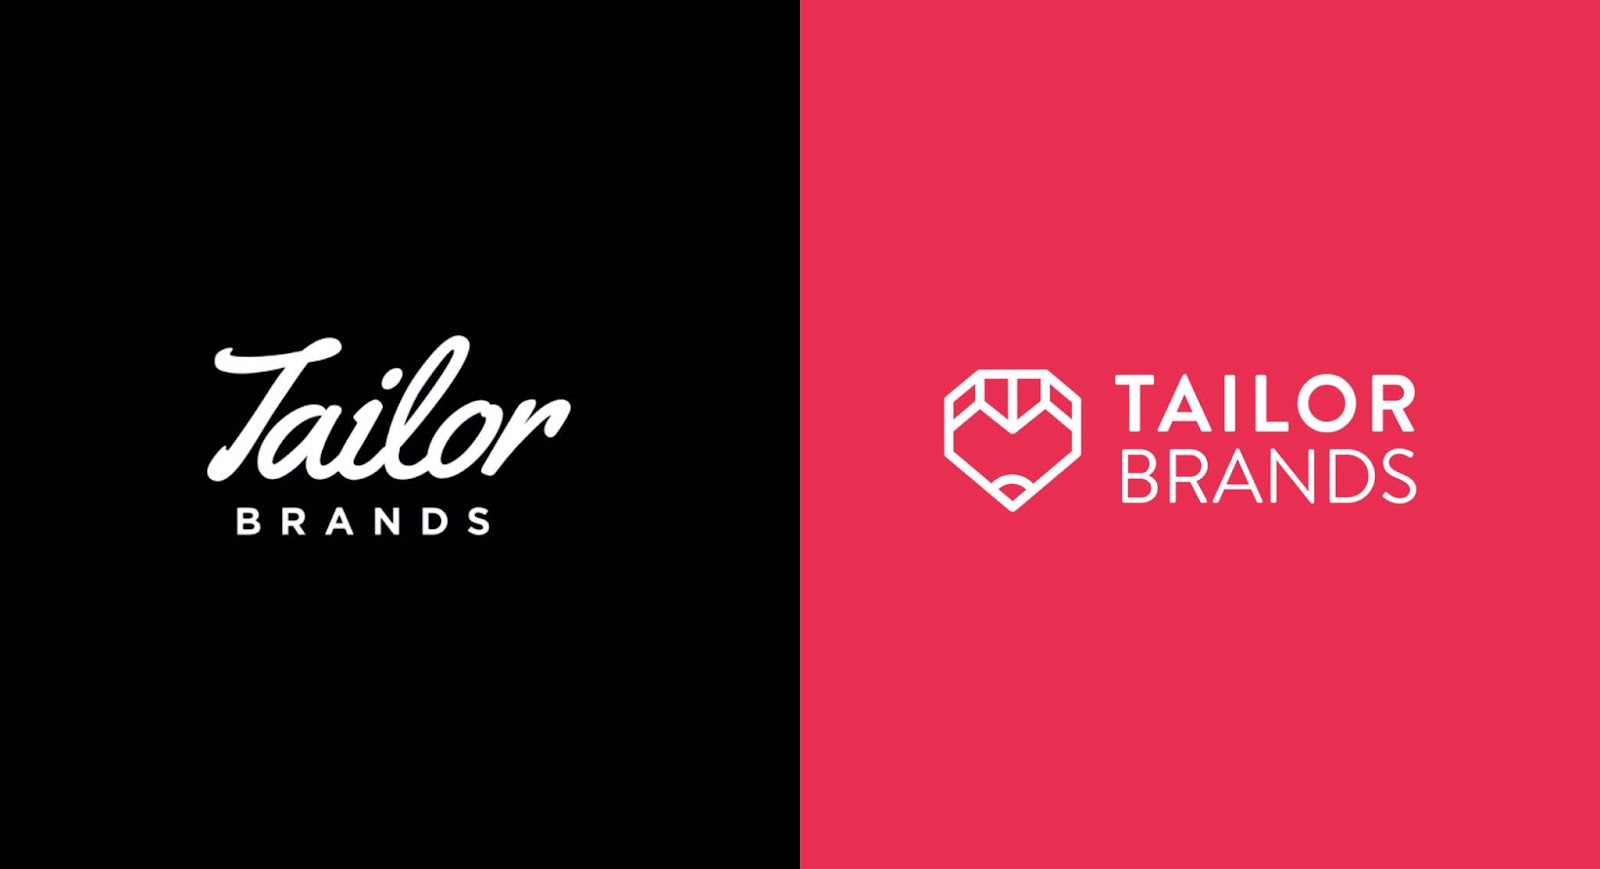 Tailor Brands tự động tạo ra các lựa chọn logo dựa trên thông tin được cung cấp.